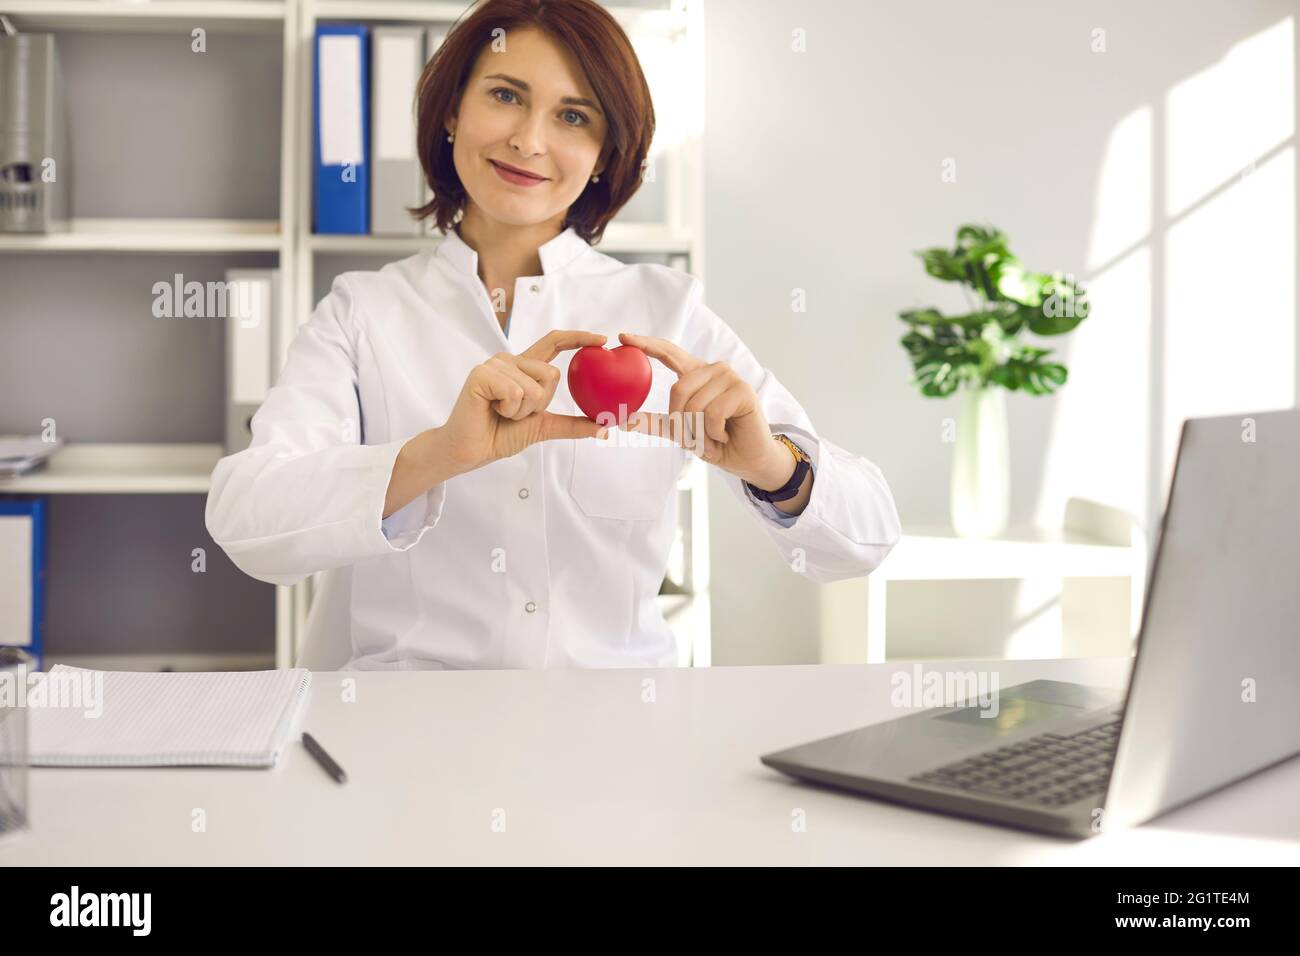 Porträt einer Kardiologin, die ein kleines rotes Herz in der Hand hält, während sie im Büro am Schreibtisch sitzt. Stockfoto